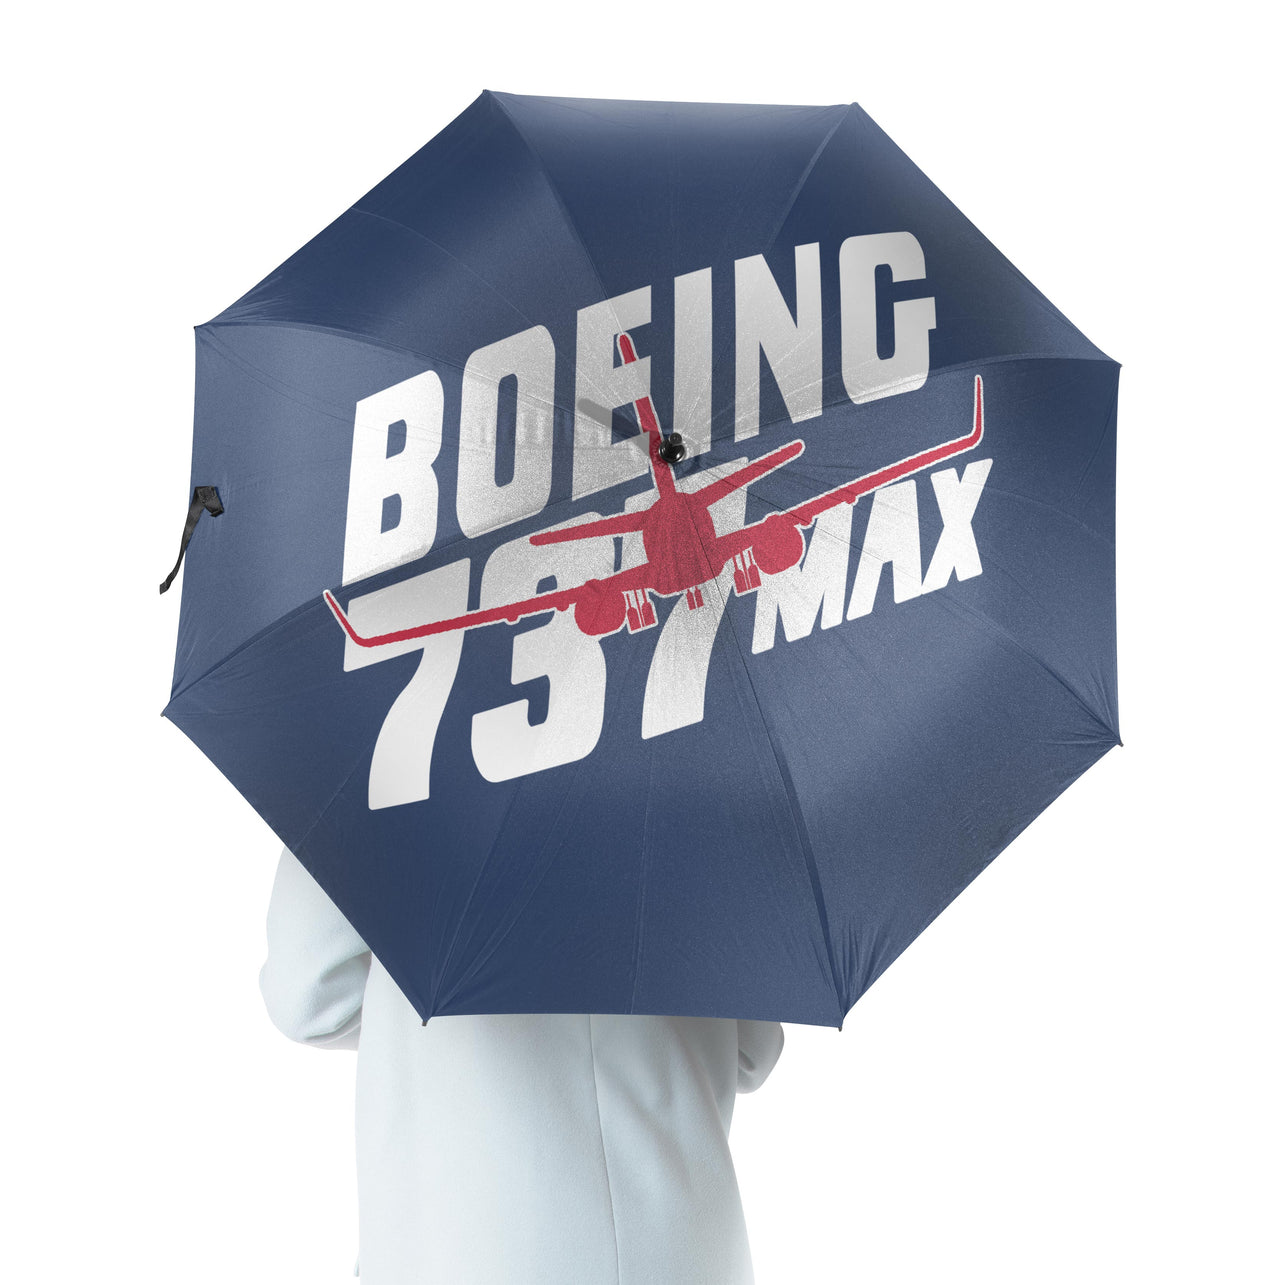 Amazing 737 Max Designed Umbrella